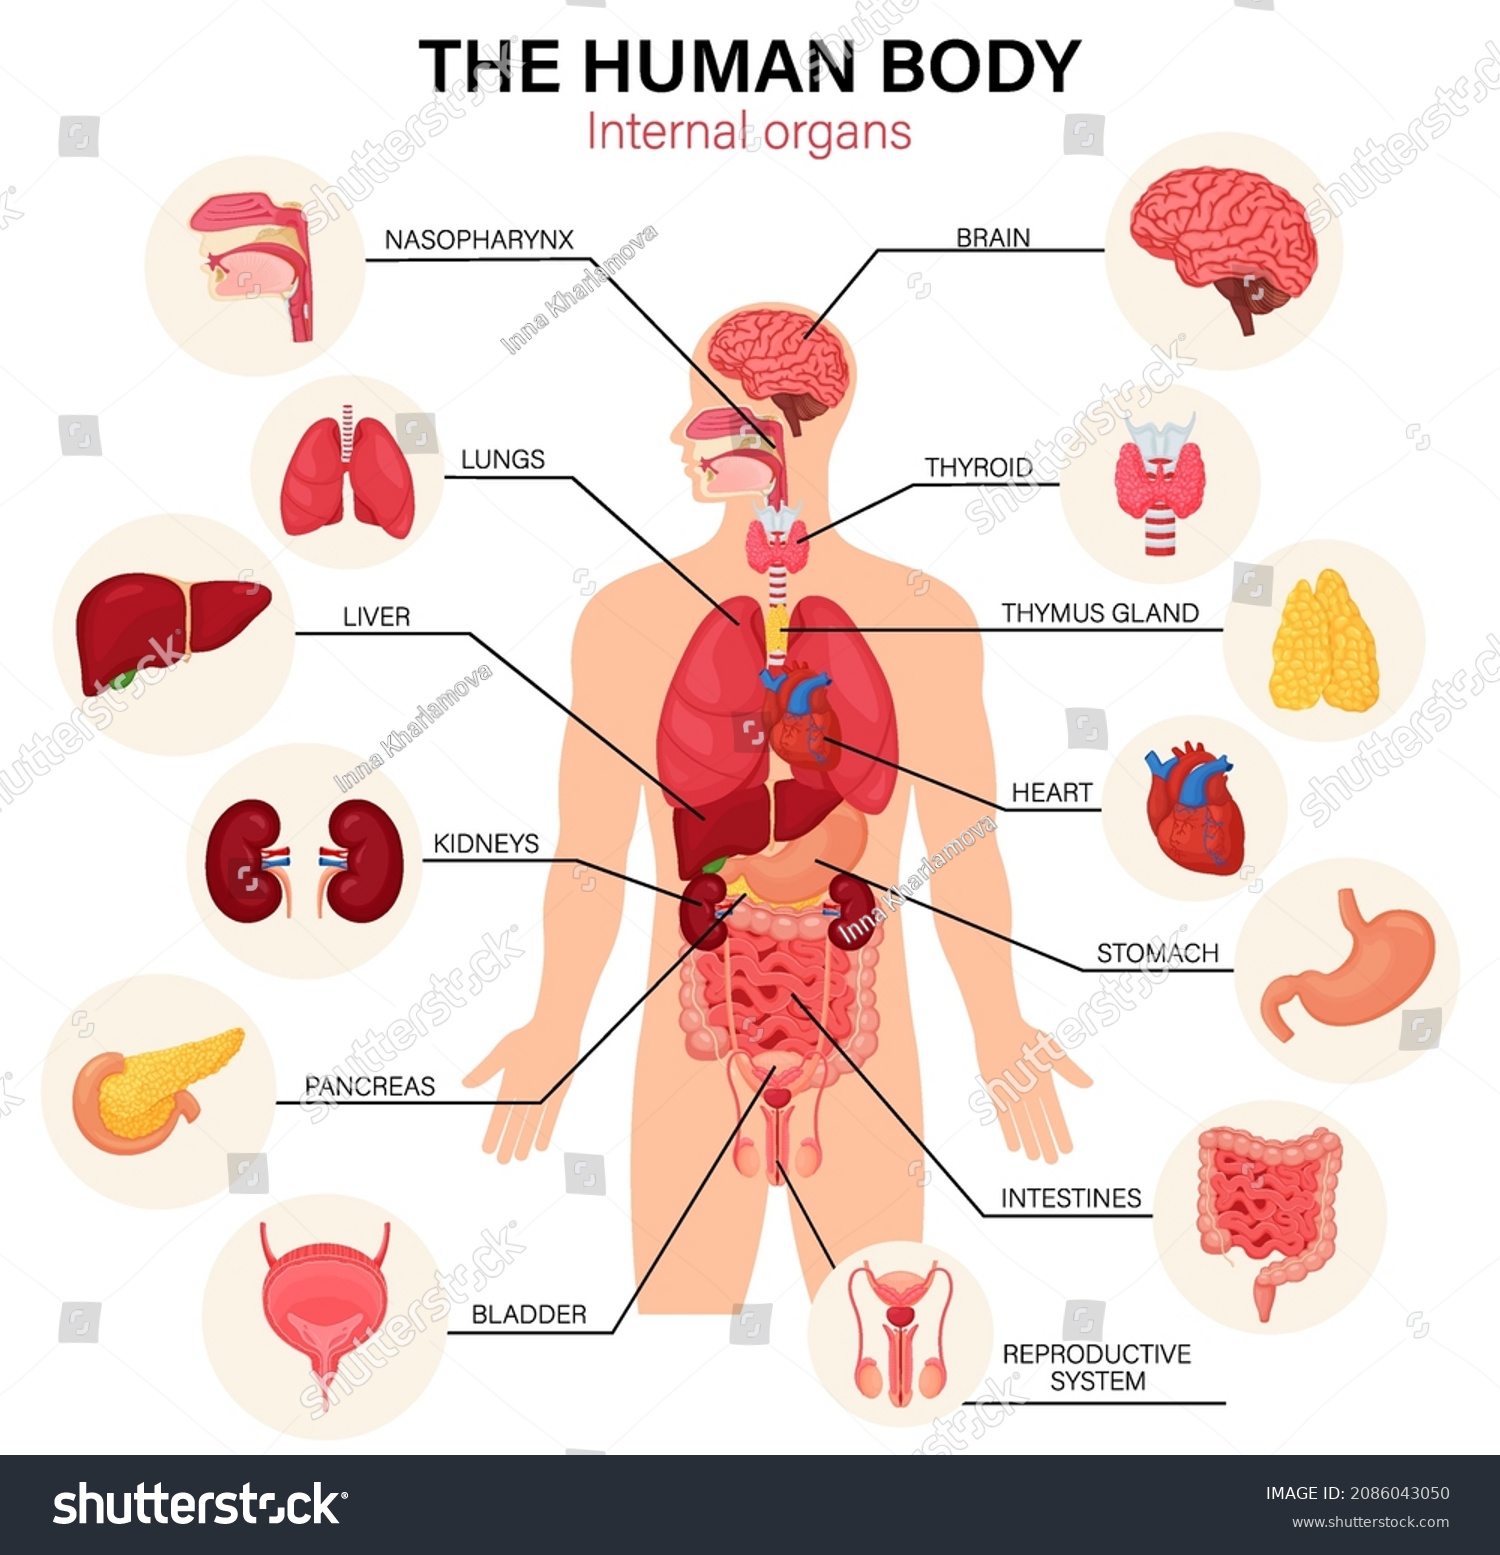 Name a human organ